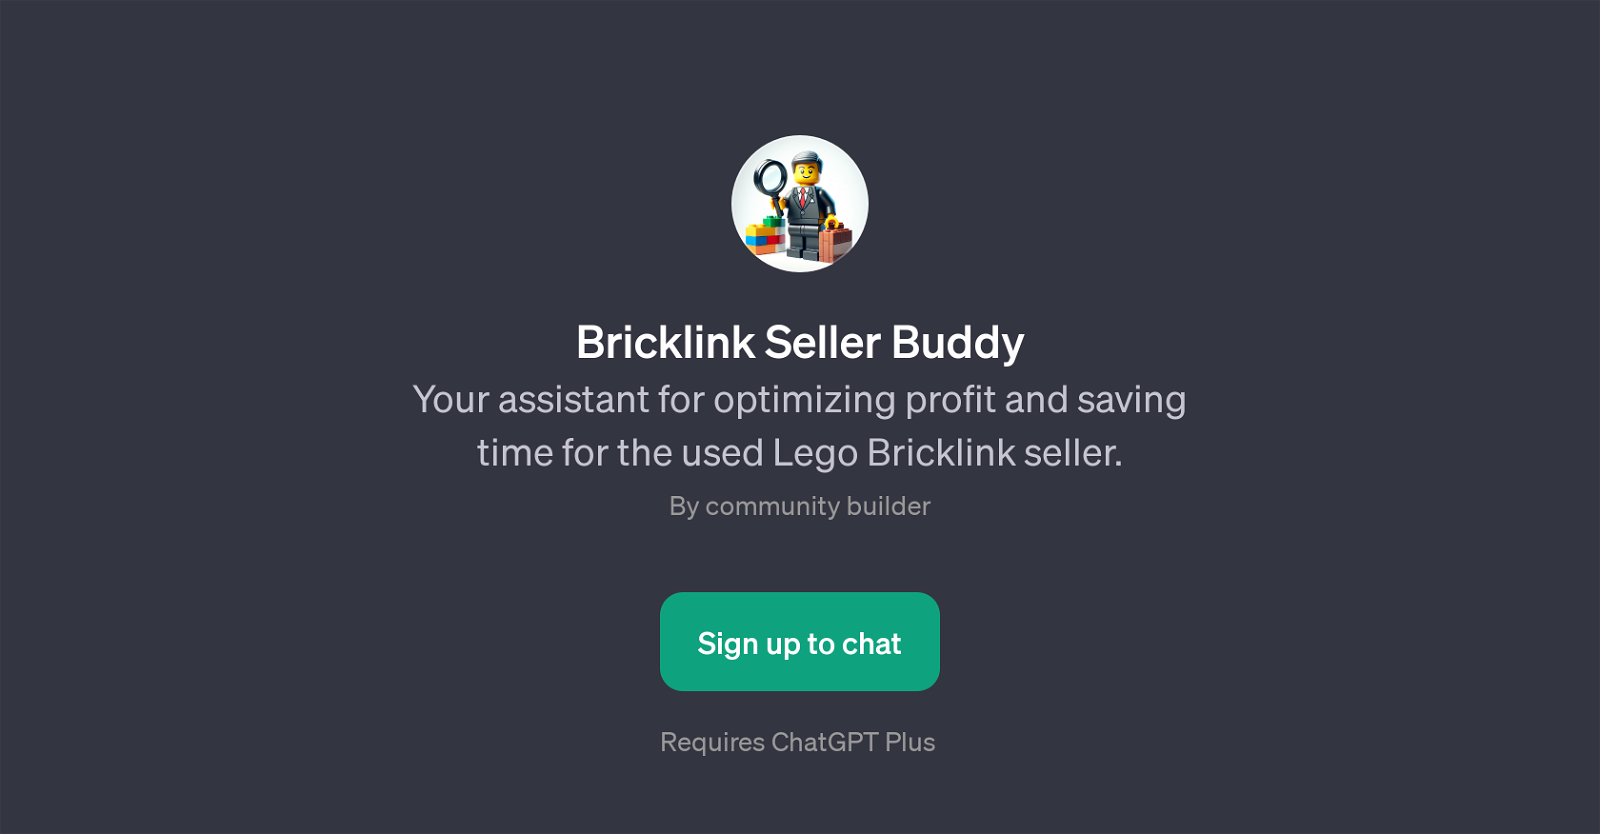 Bricklink Seller Buddy website